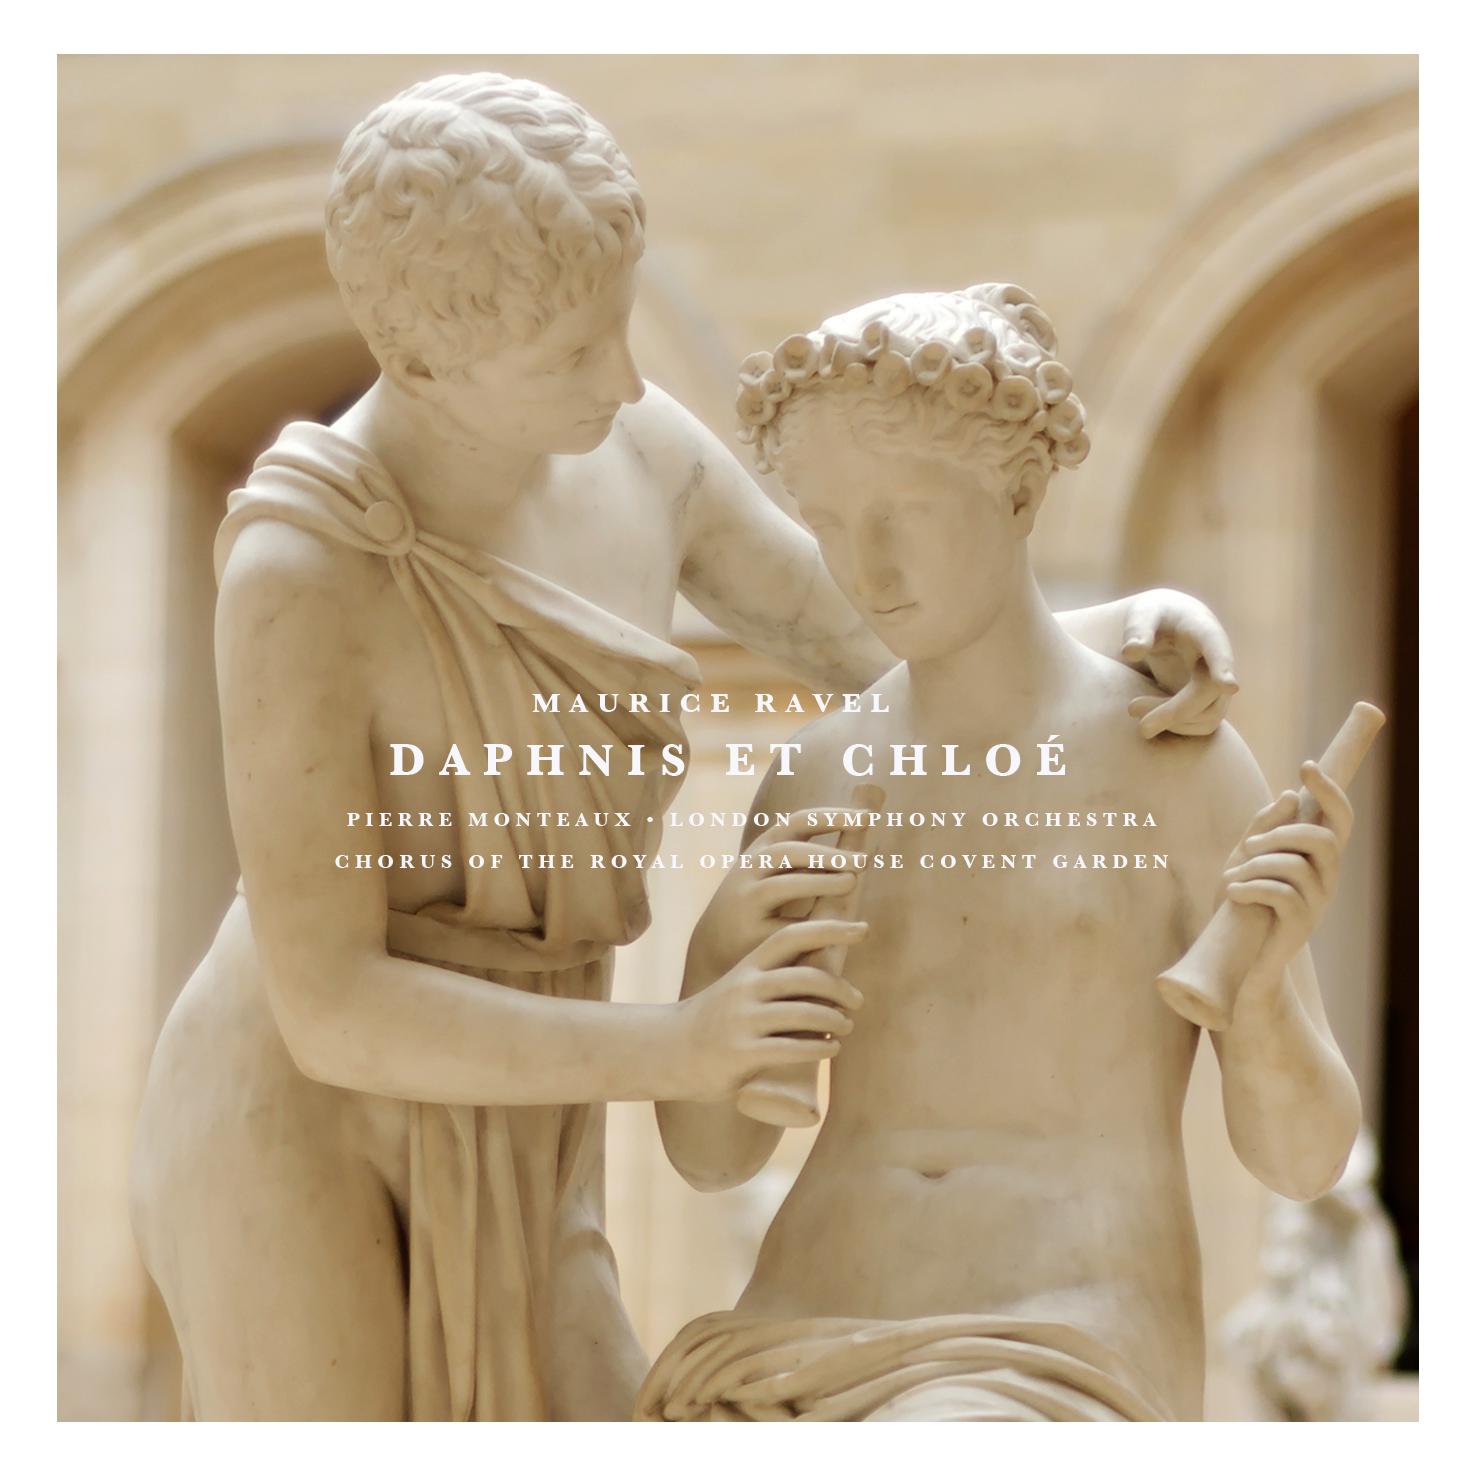 Daphnis Et Chloe: Part I " Danse le ge re et gracieuse de Daphnis"